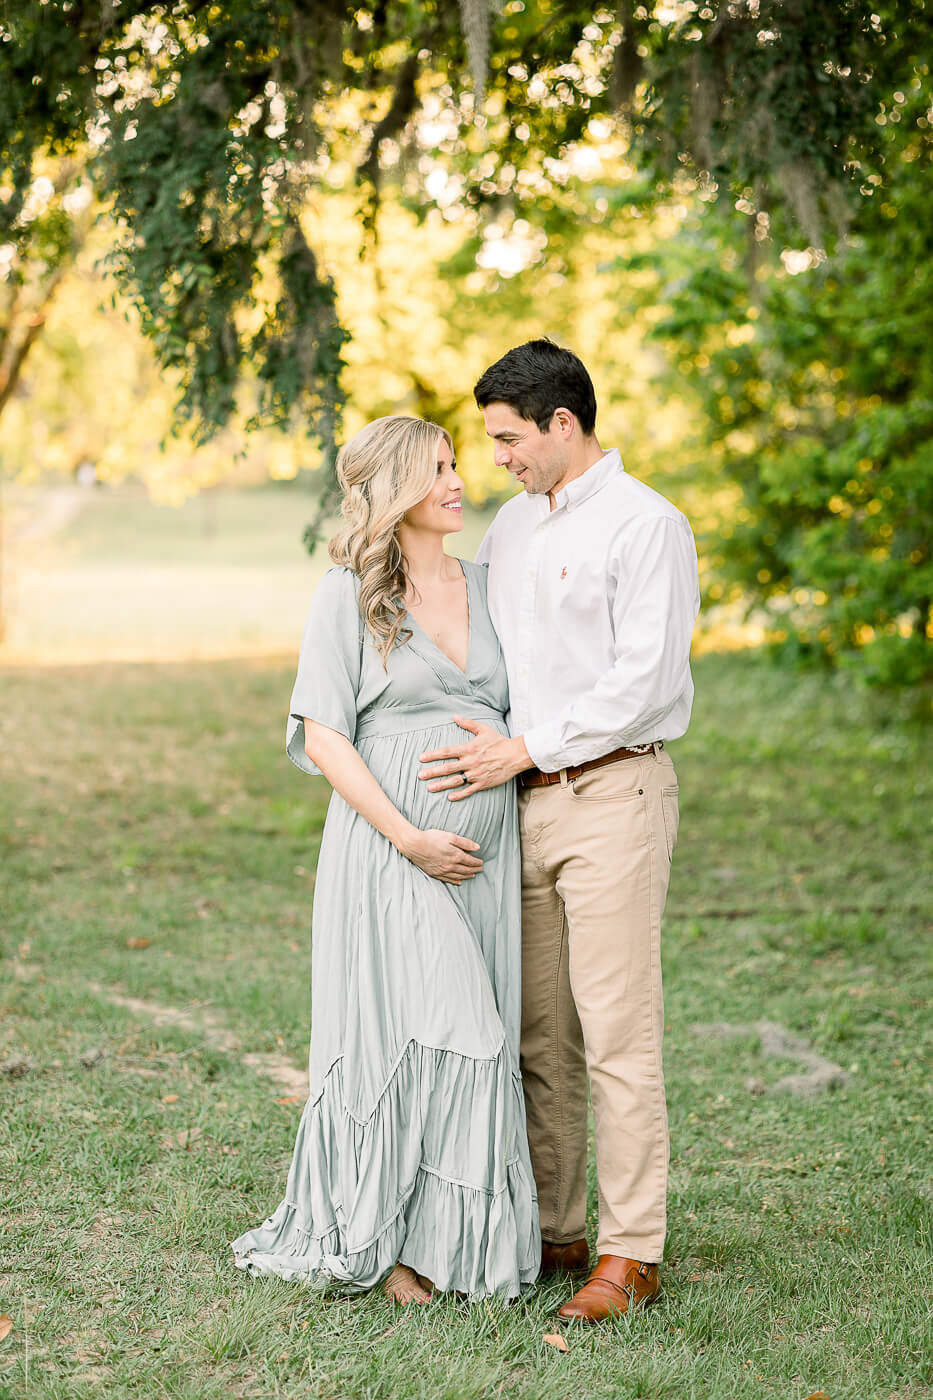 Houston Maternity Photographer sunset maternity image